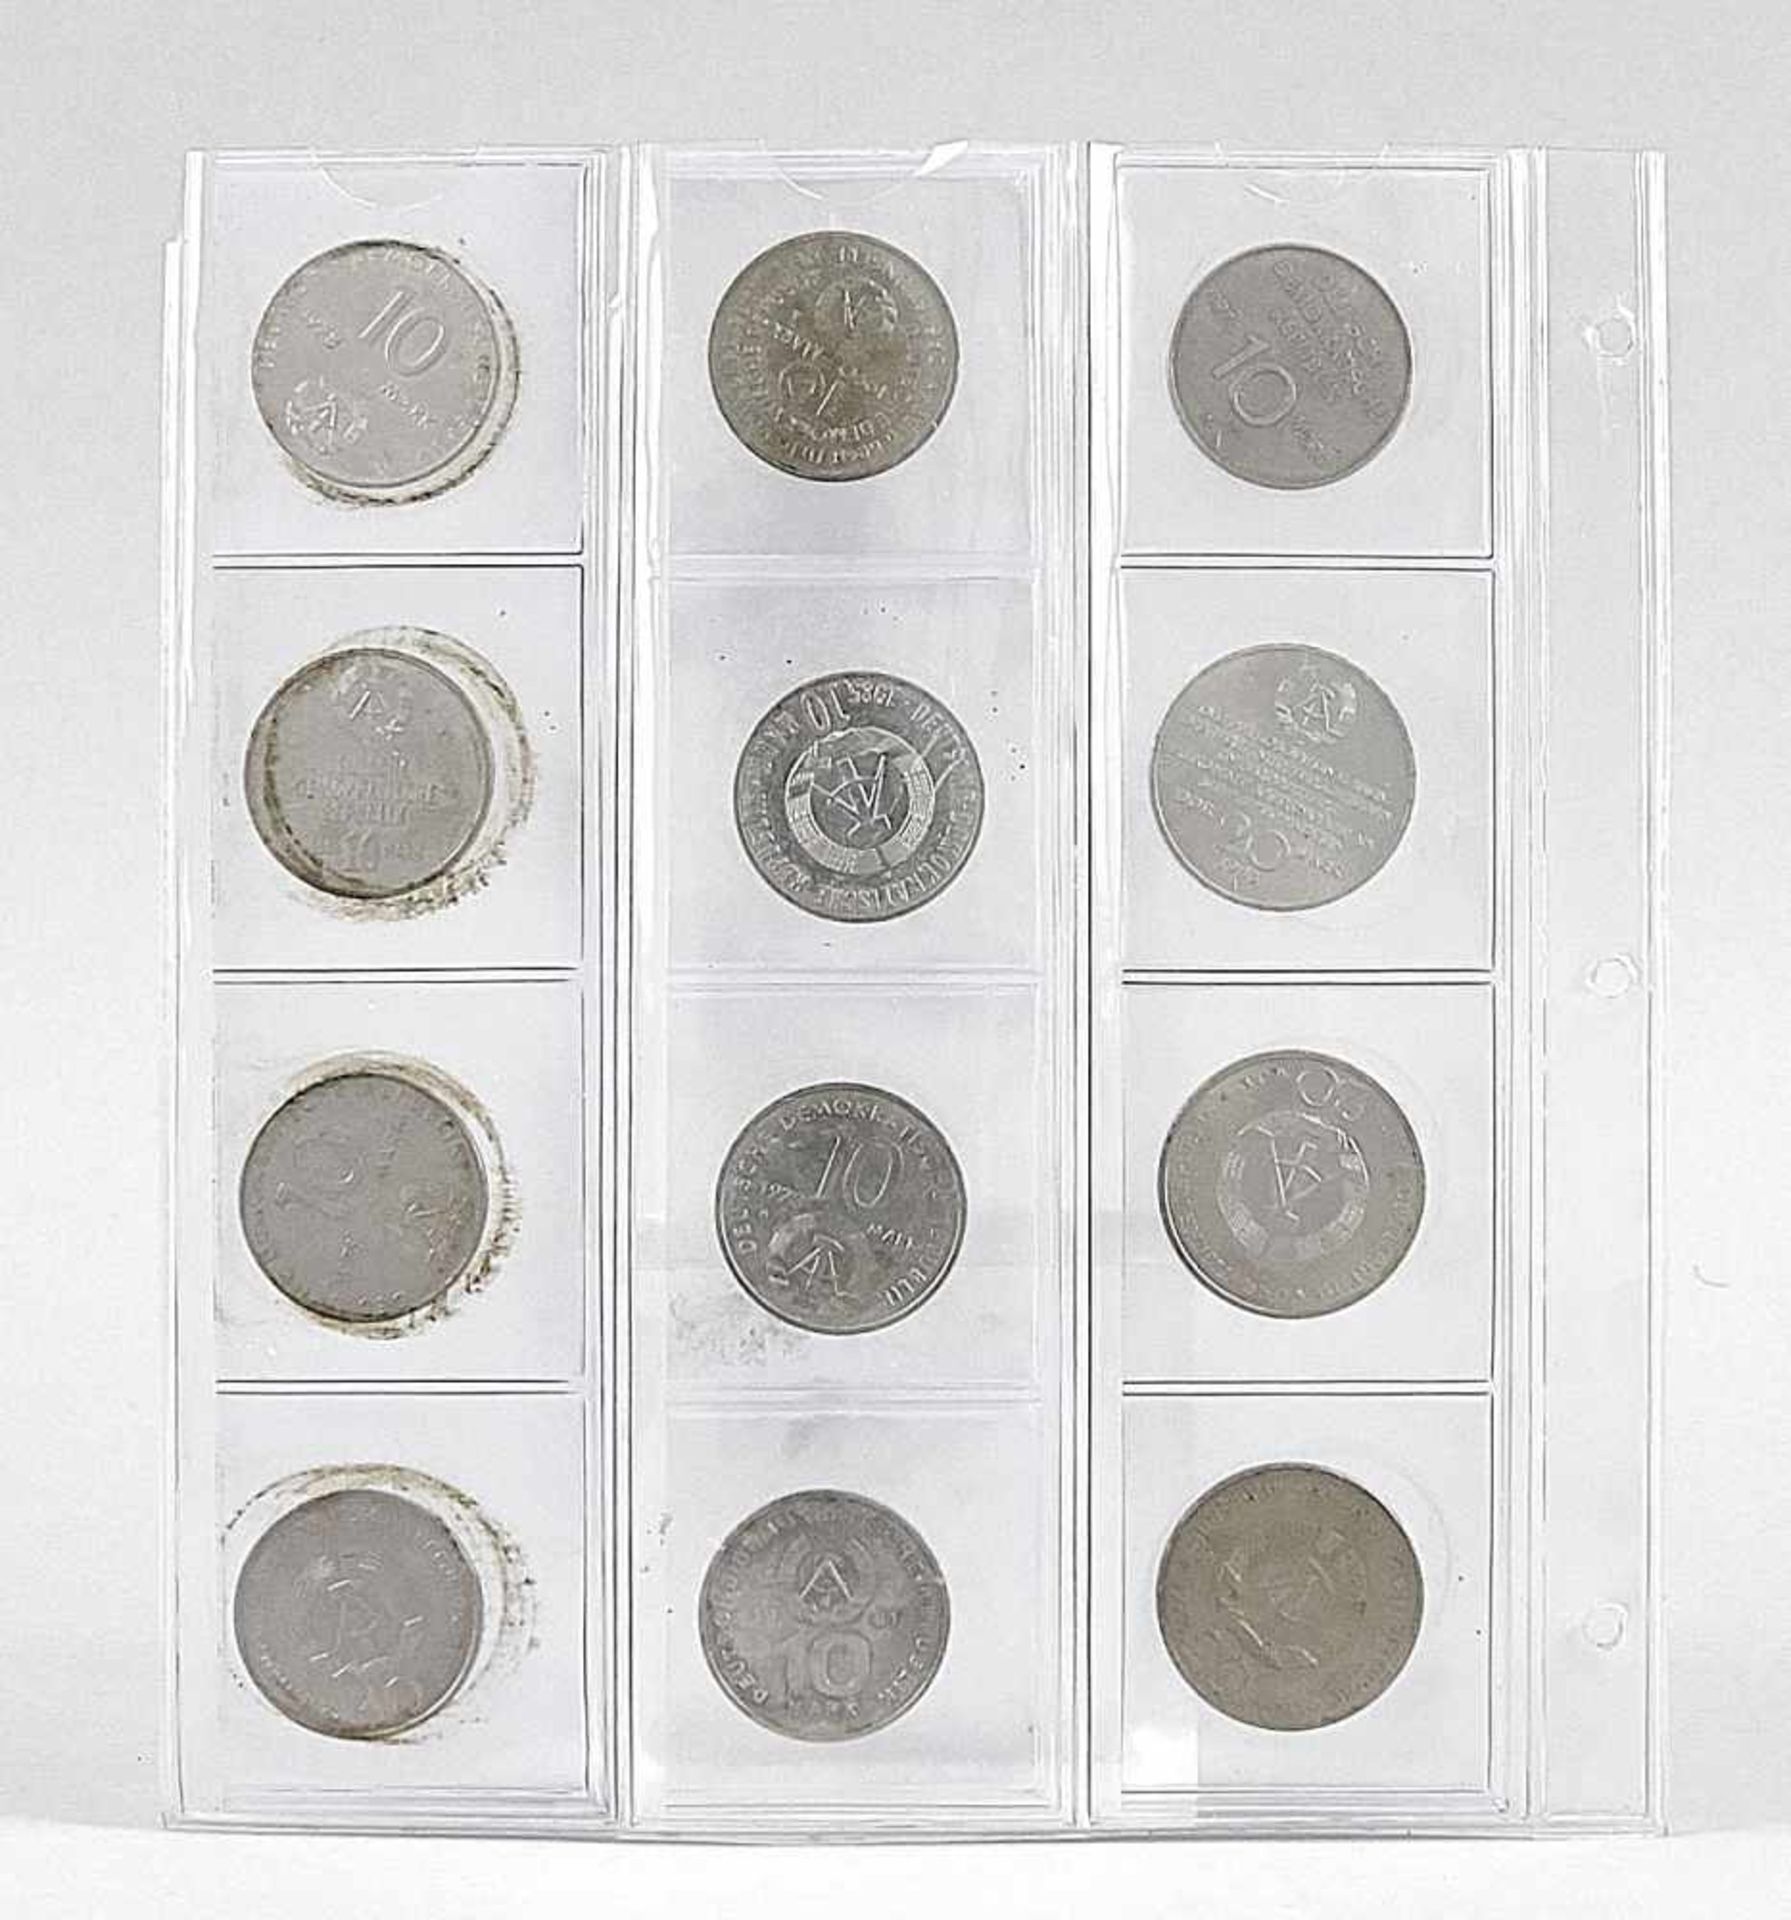 Konvolut Münzen aus der DDR: 9 x 10 Mark und 3 x 20 Mark in Klarsichtschuber zum Abheften- - -22.